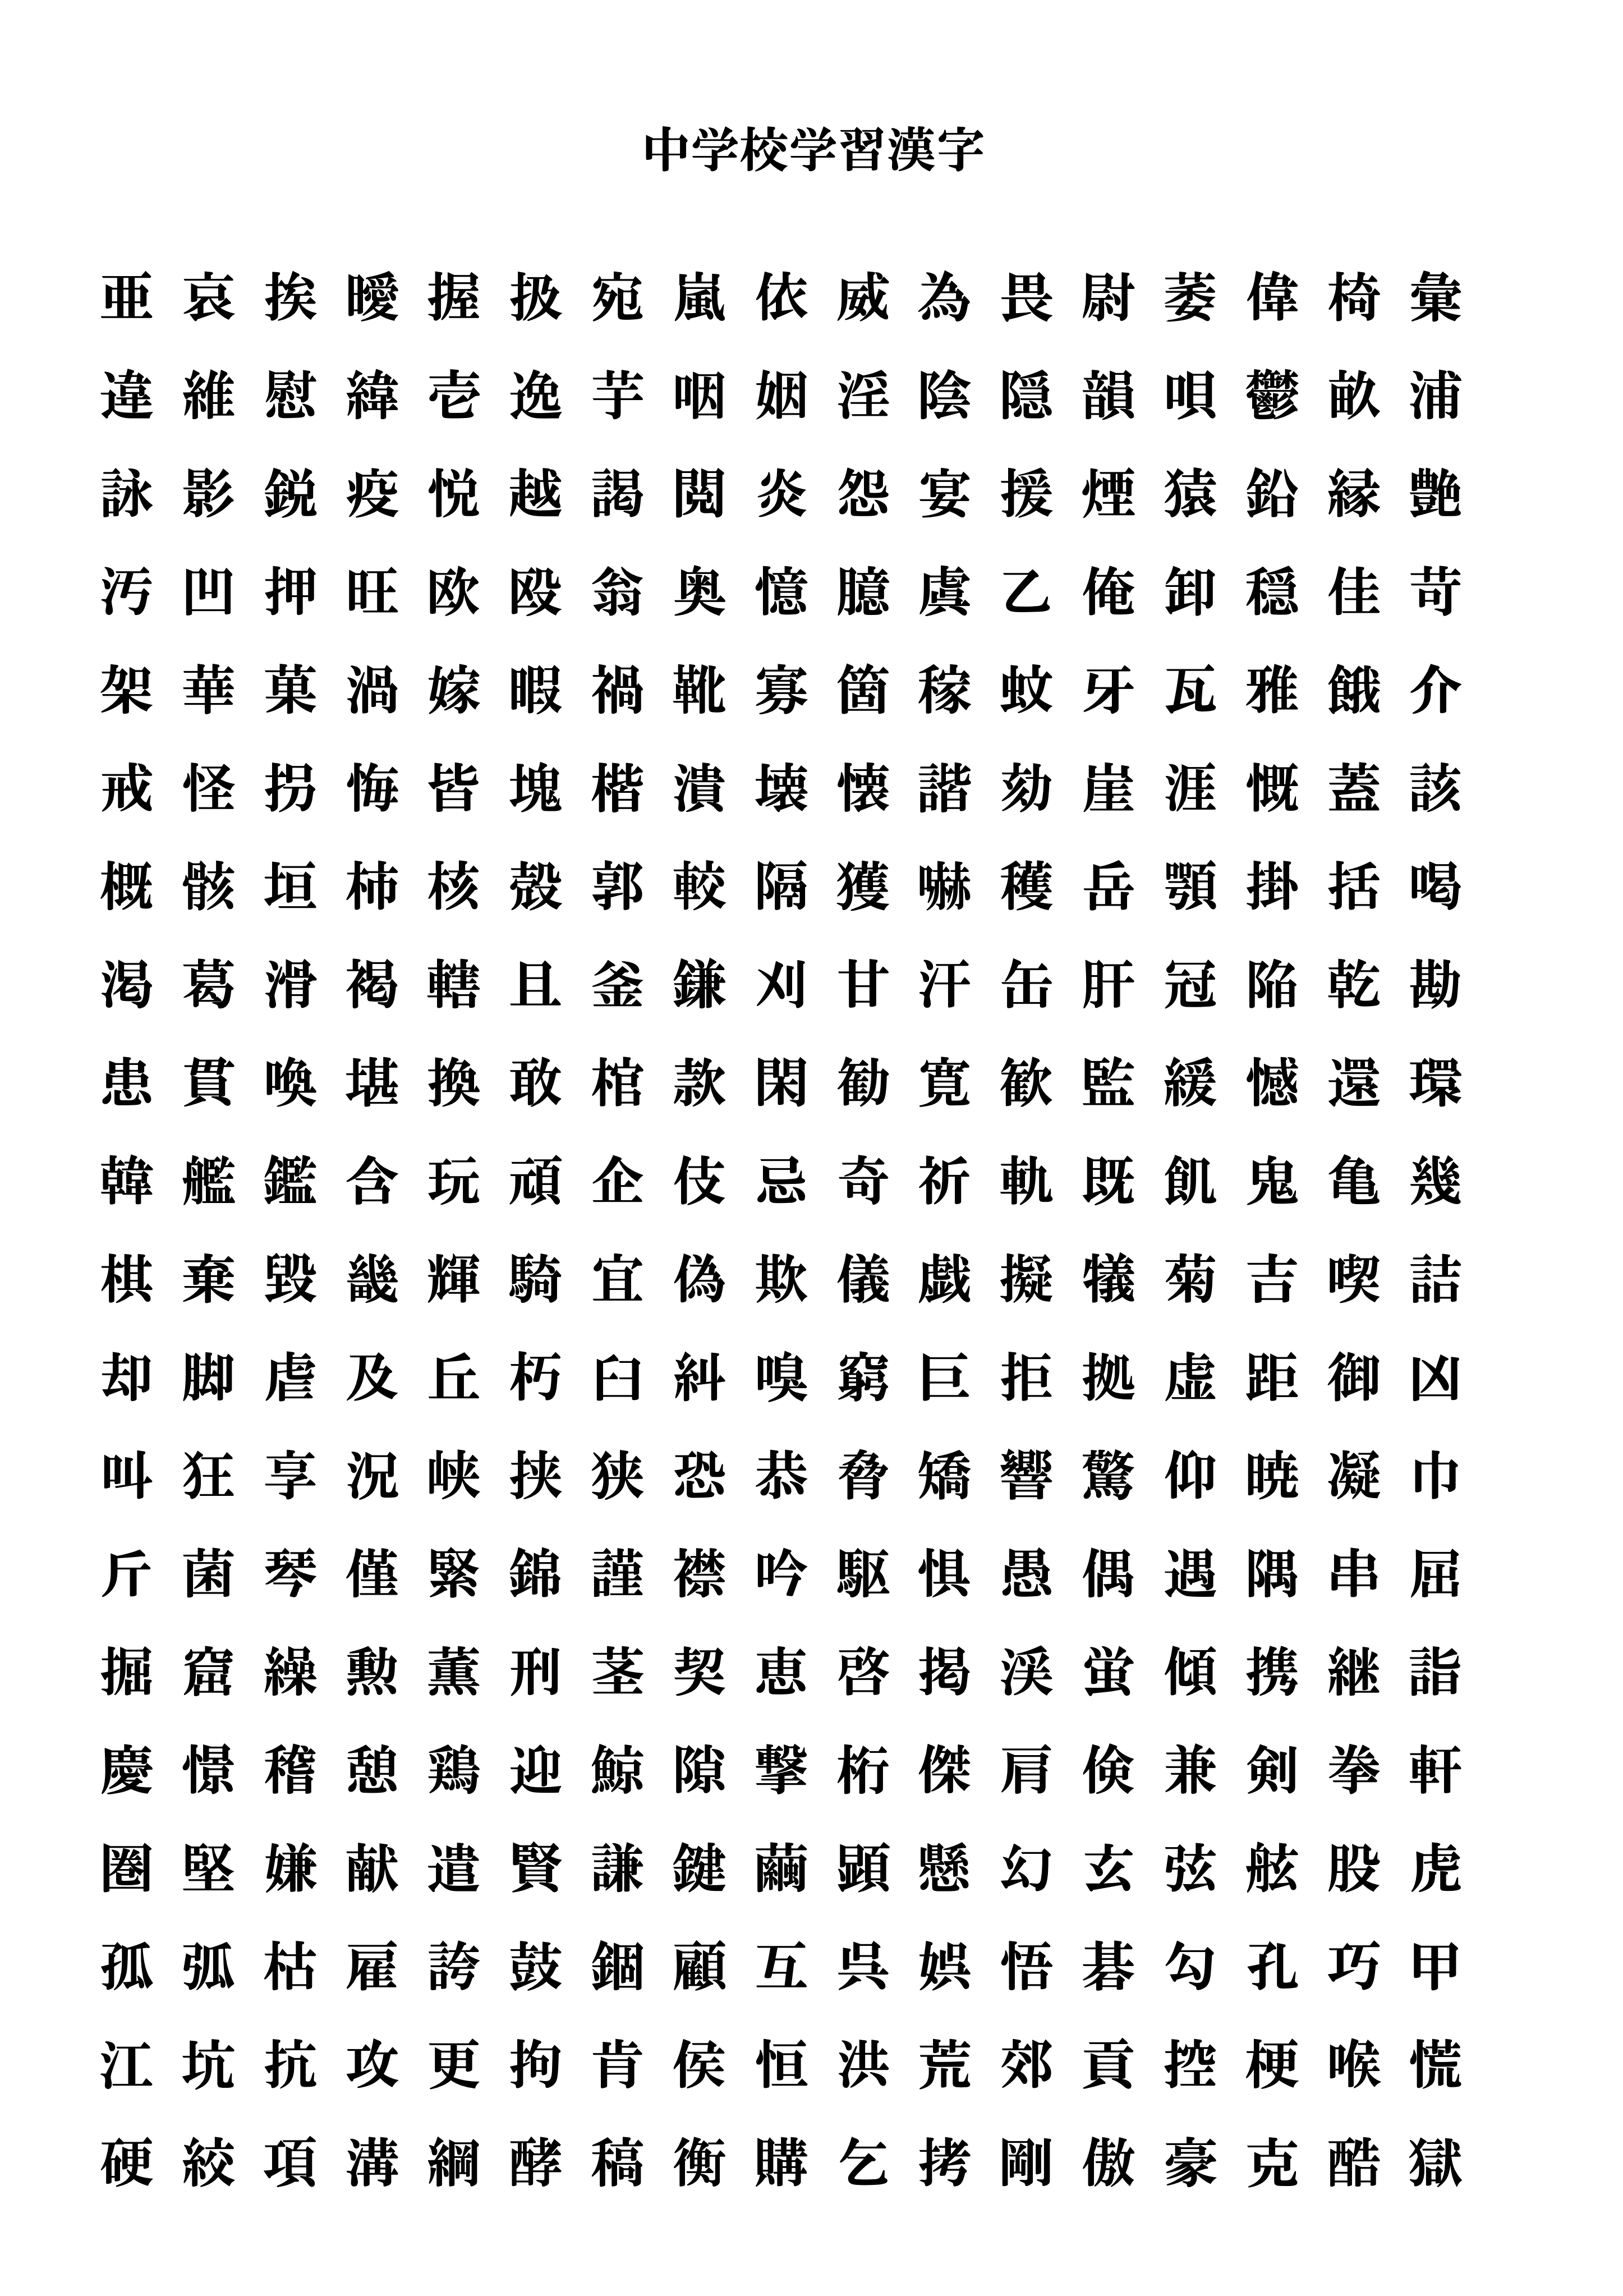 中学校 で 習う 漢字